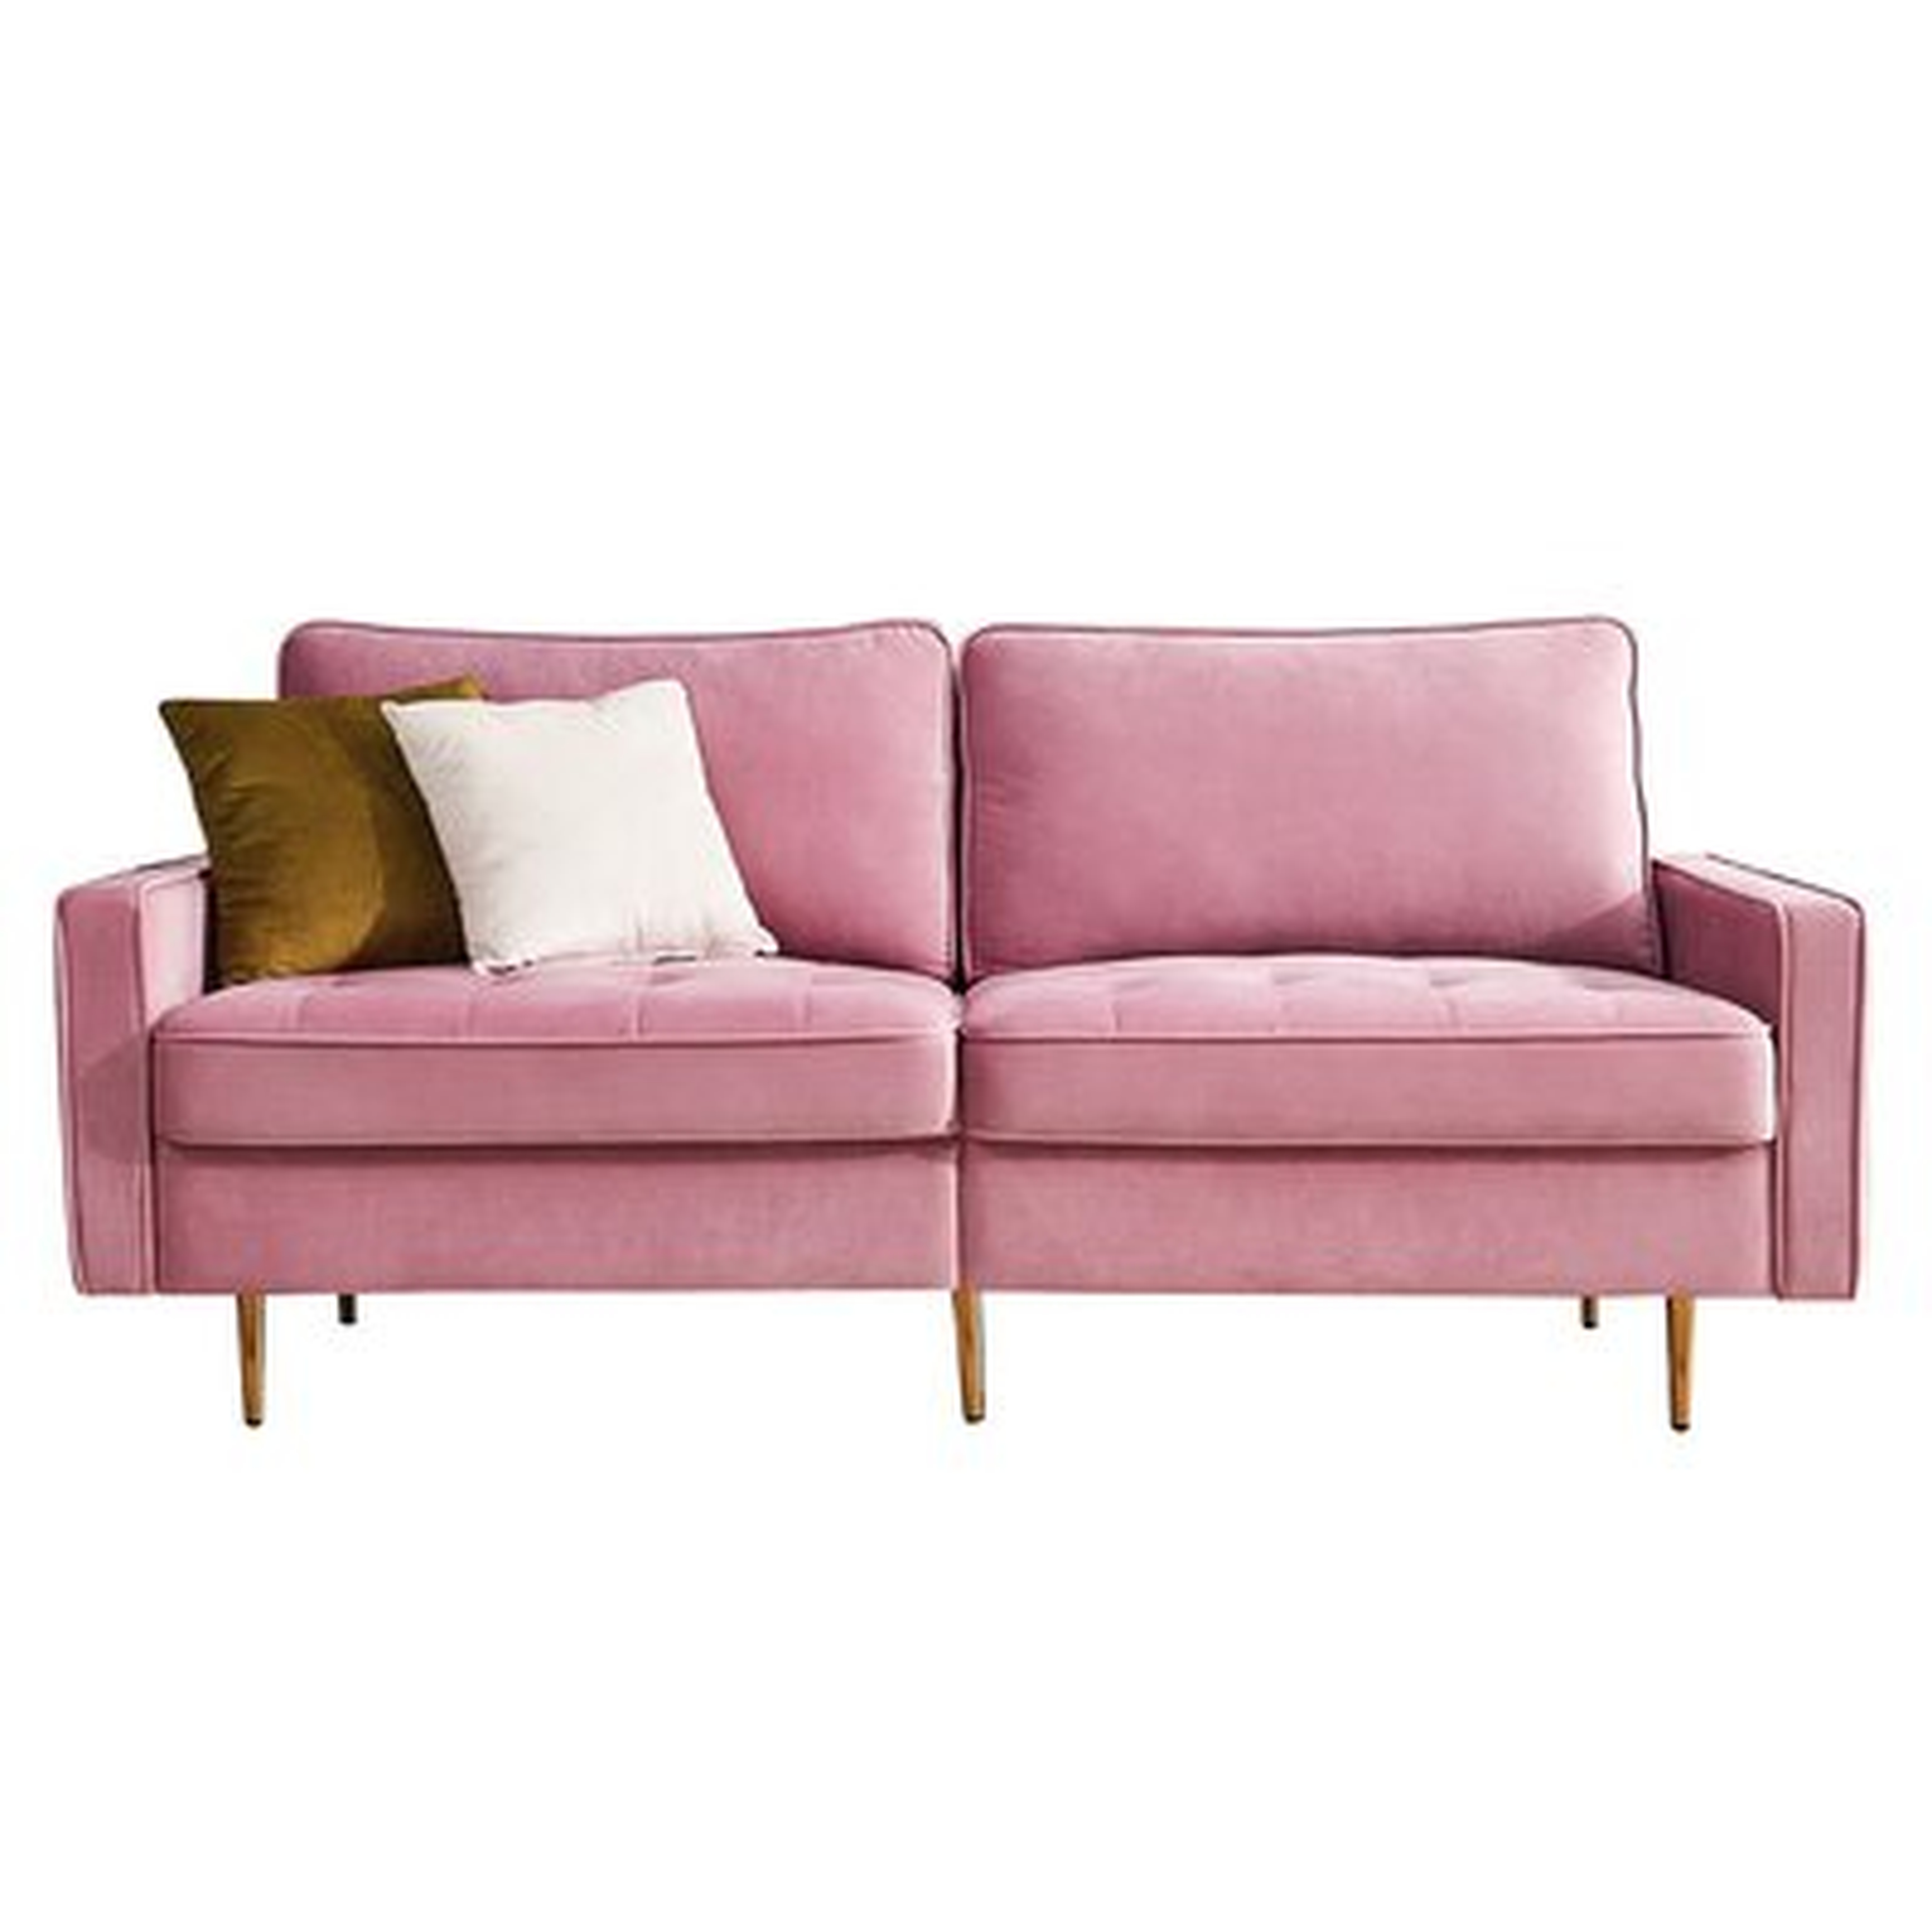 Mercer41 Modern Velvet Fabric Sofa (Pink) - Wayfair